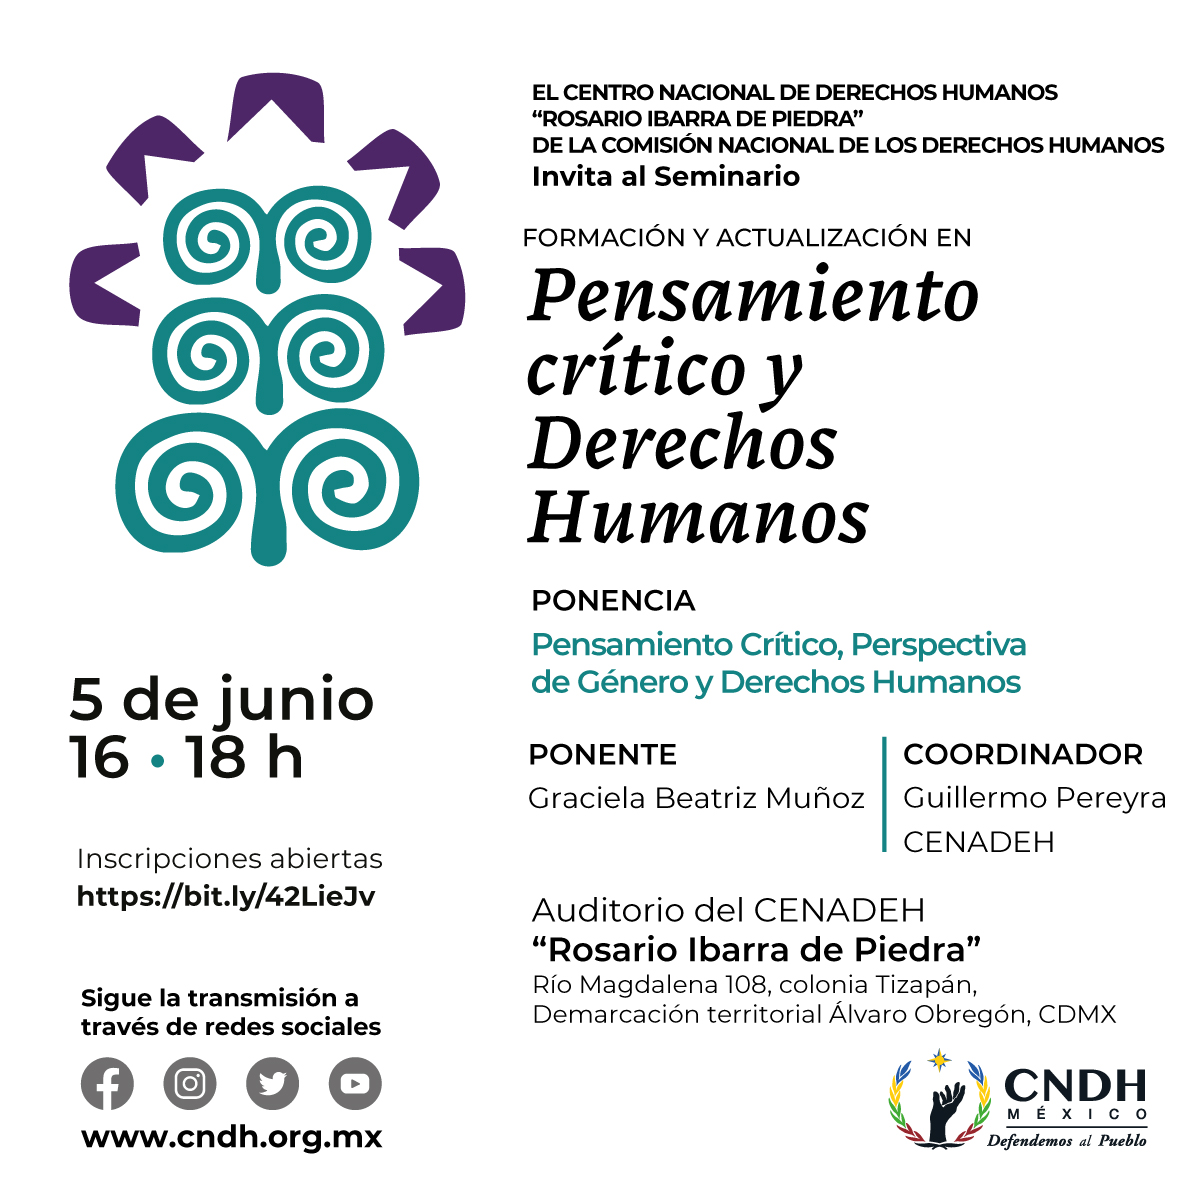 Te invitamos al Seminario 'Formación y actualización en pensamiento crítico y #DerechosHumanos'.

🗓️ 5 de junio.
⌚ 16 a 18 hrs.
🔵 A través de nuestras redes sociales.

#DefendemosAlPueblo